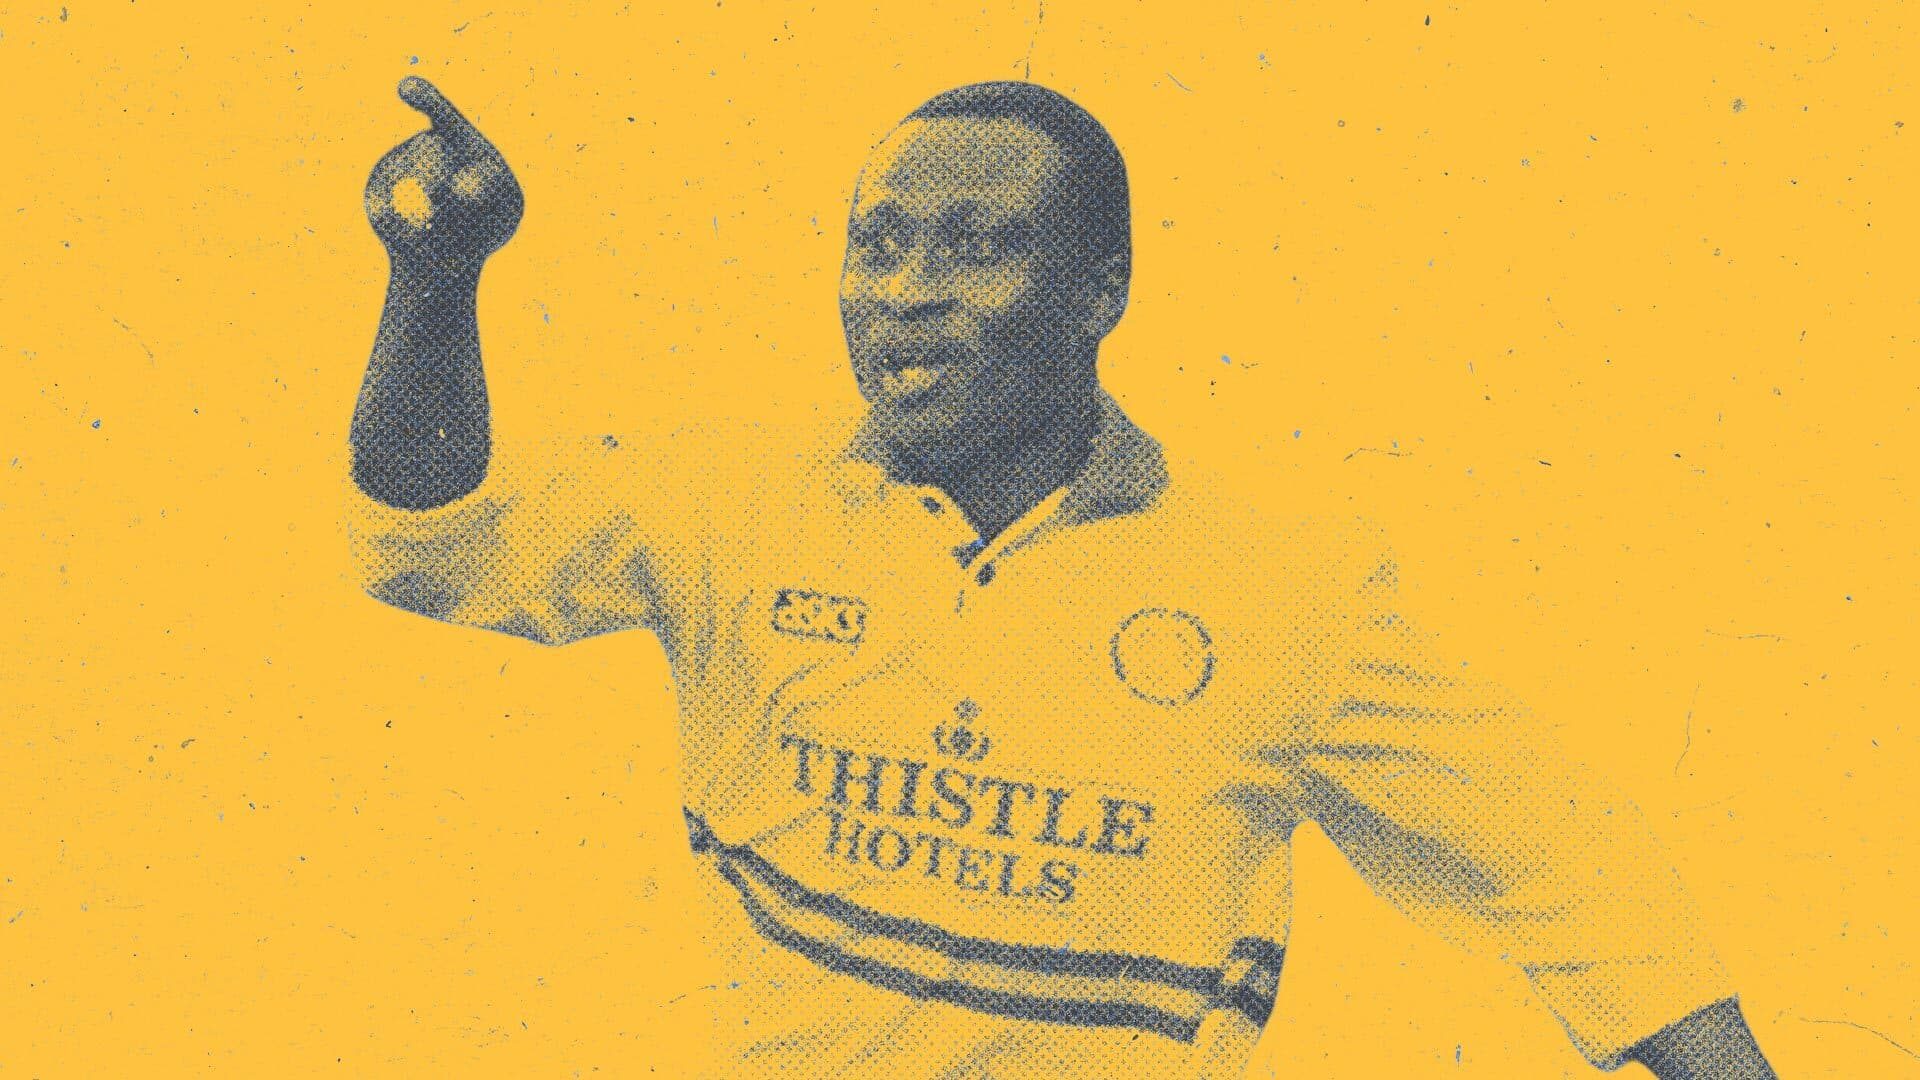 Tony Yeboah celebrating in the white Thistle Hotels kit, pointing — towards Europe